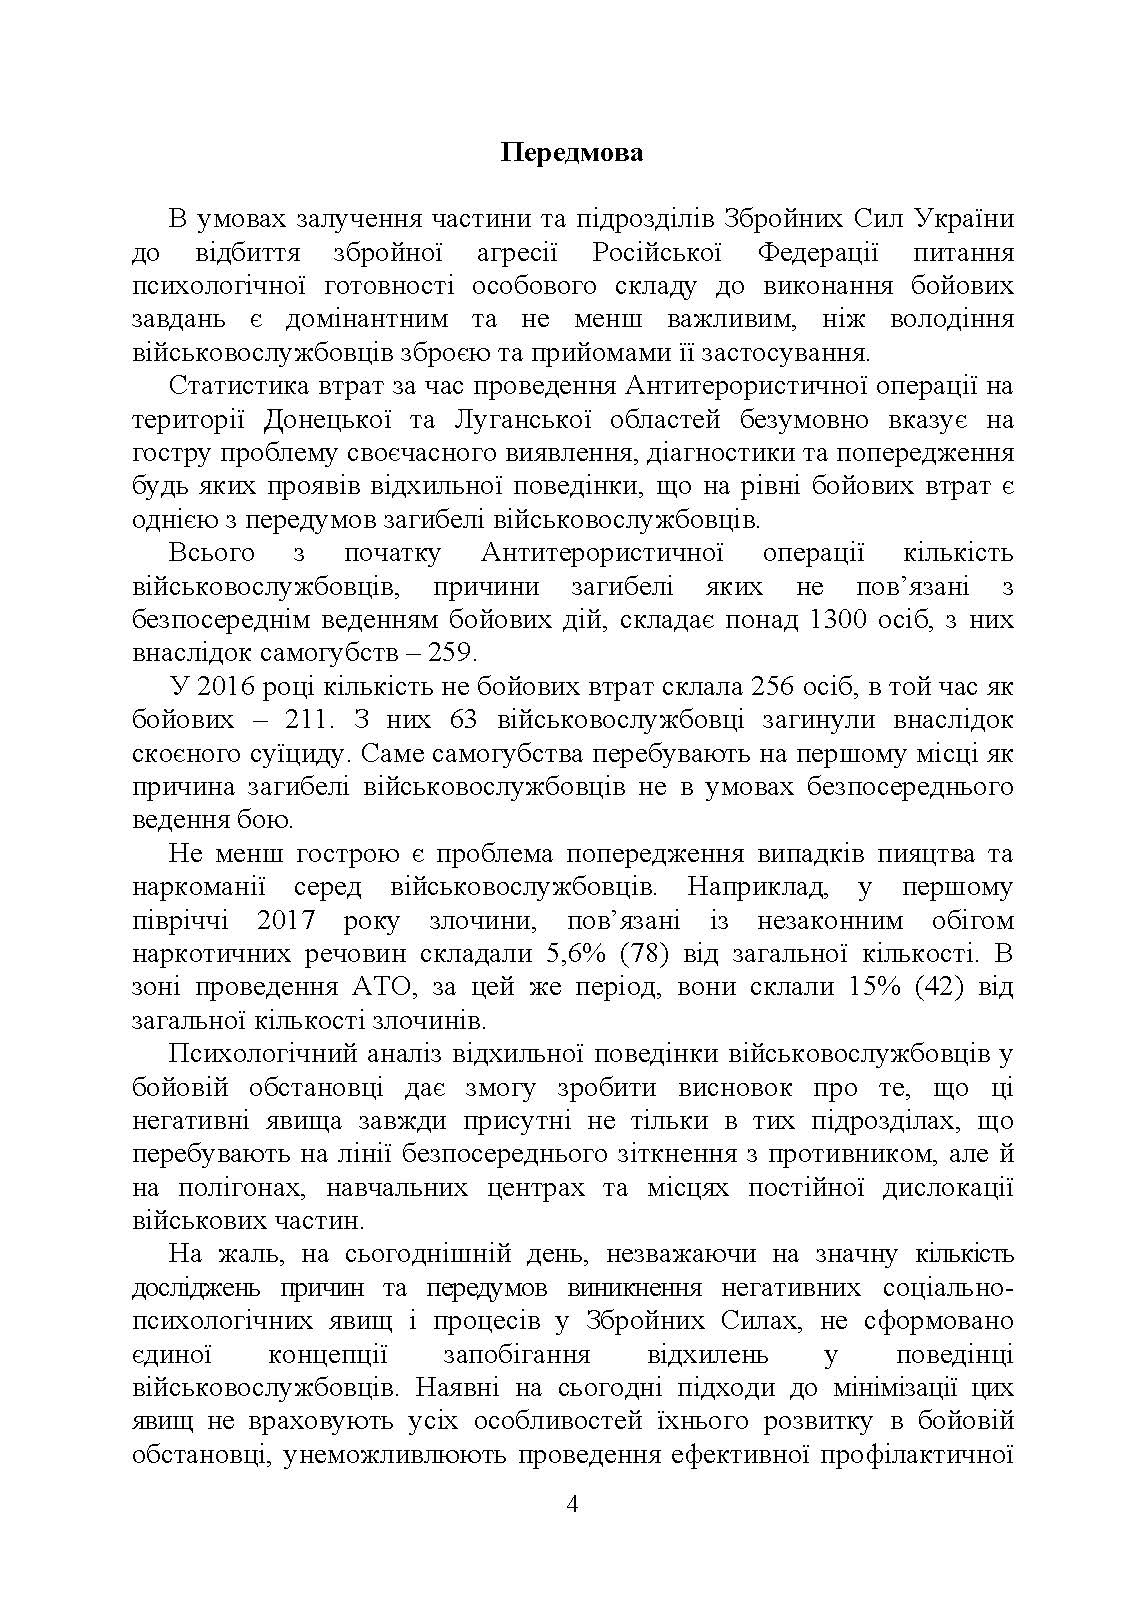 Профілактика відхильної поведінки у військовослужбовців. Автор — А. М. Романишин, Т. М. Мацевко. 